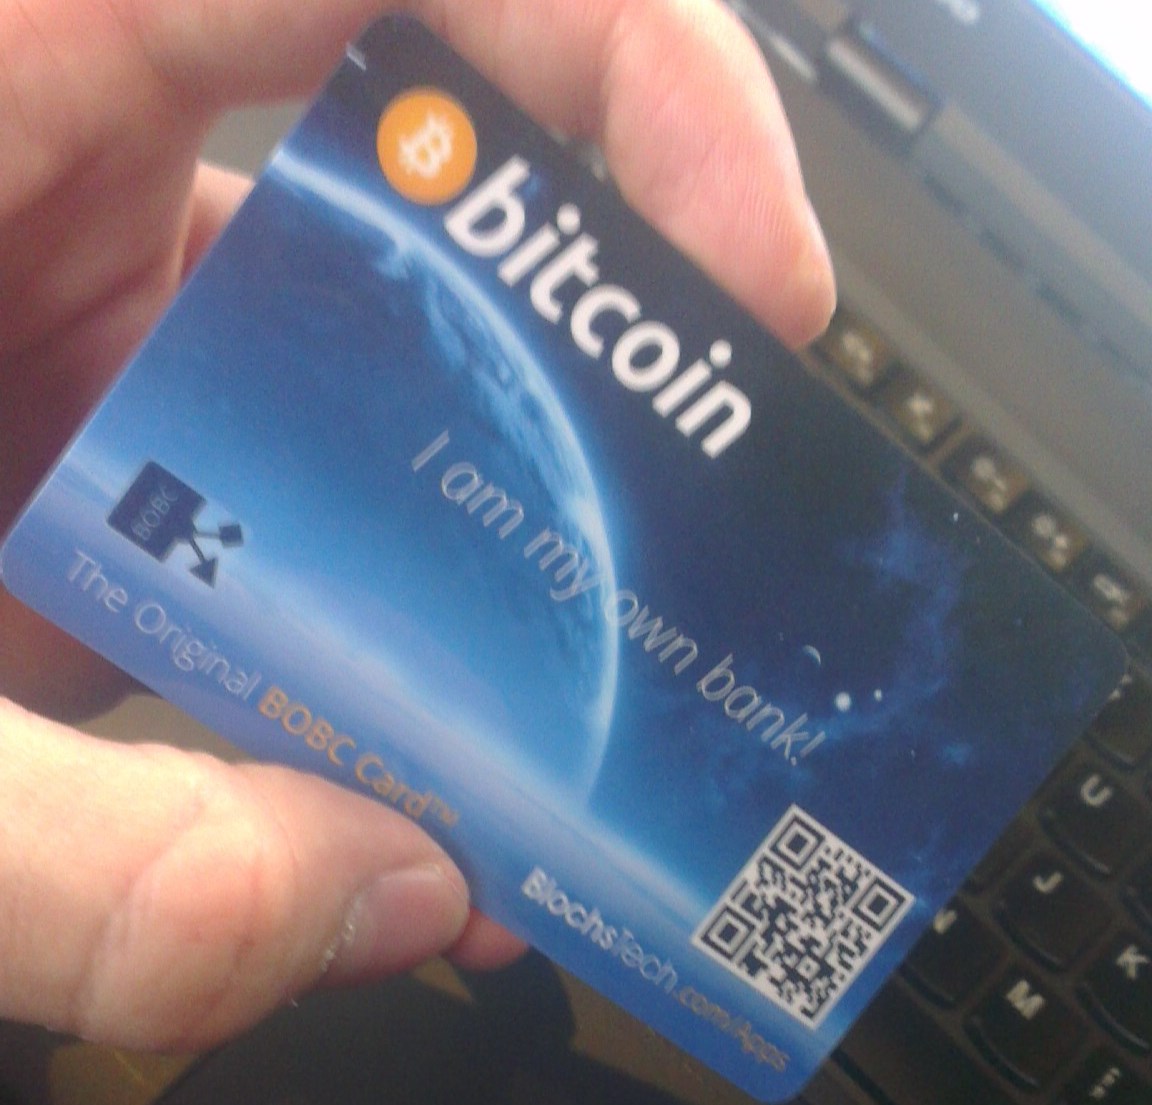 File:BlochsTech Bitcoin card hardware wallet.jpg